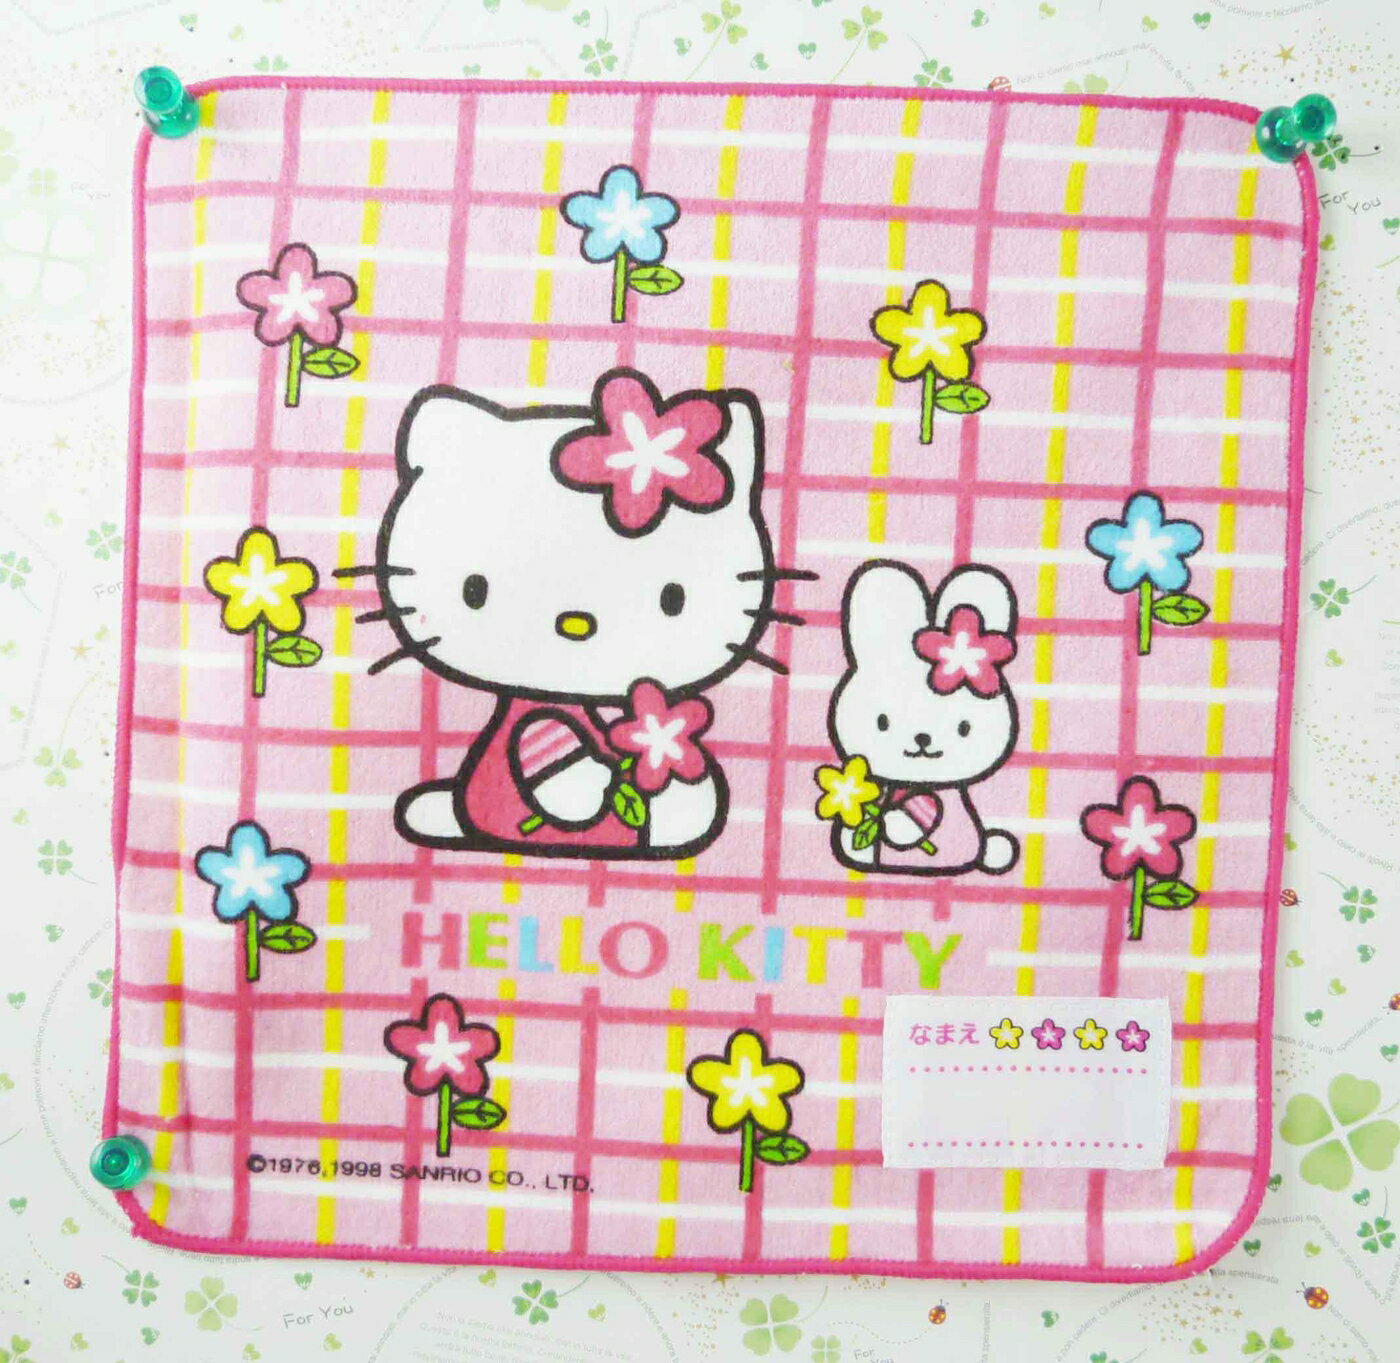 【震撼精品百貨】Hello Kitty 凱蒂貓 方巾-黃色線條-對望對坐 震撼日式精品百貨